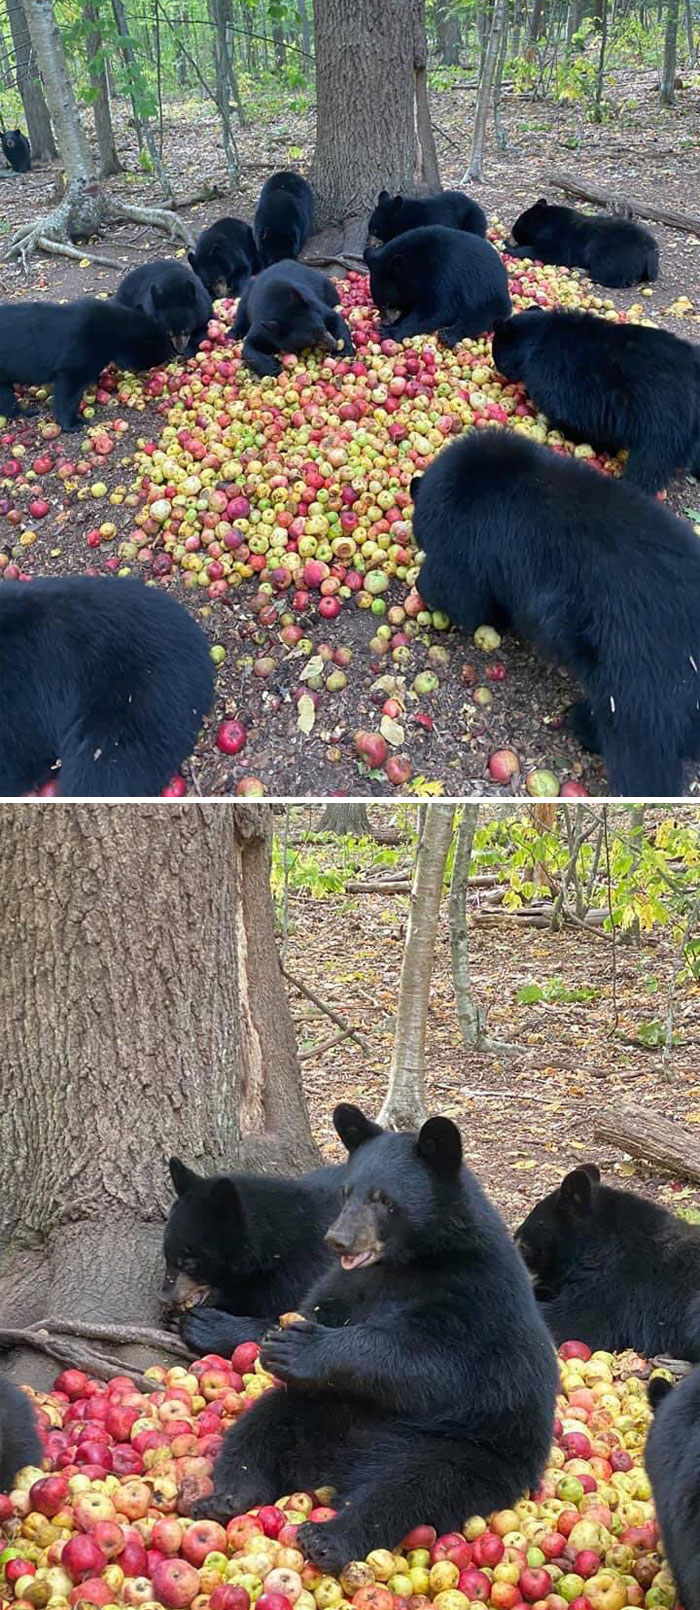 Unos osos negros comiendo unas manzanas en el bosque